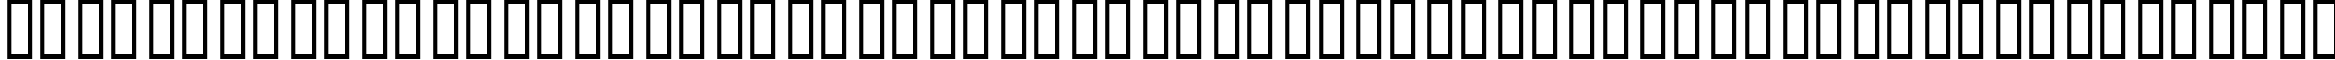 Пример написания русского алфавита шрифтом FreeHand MX Symbols